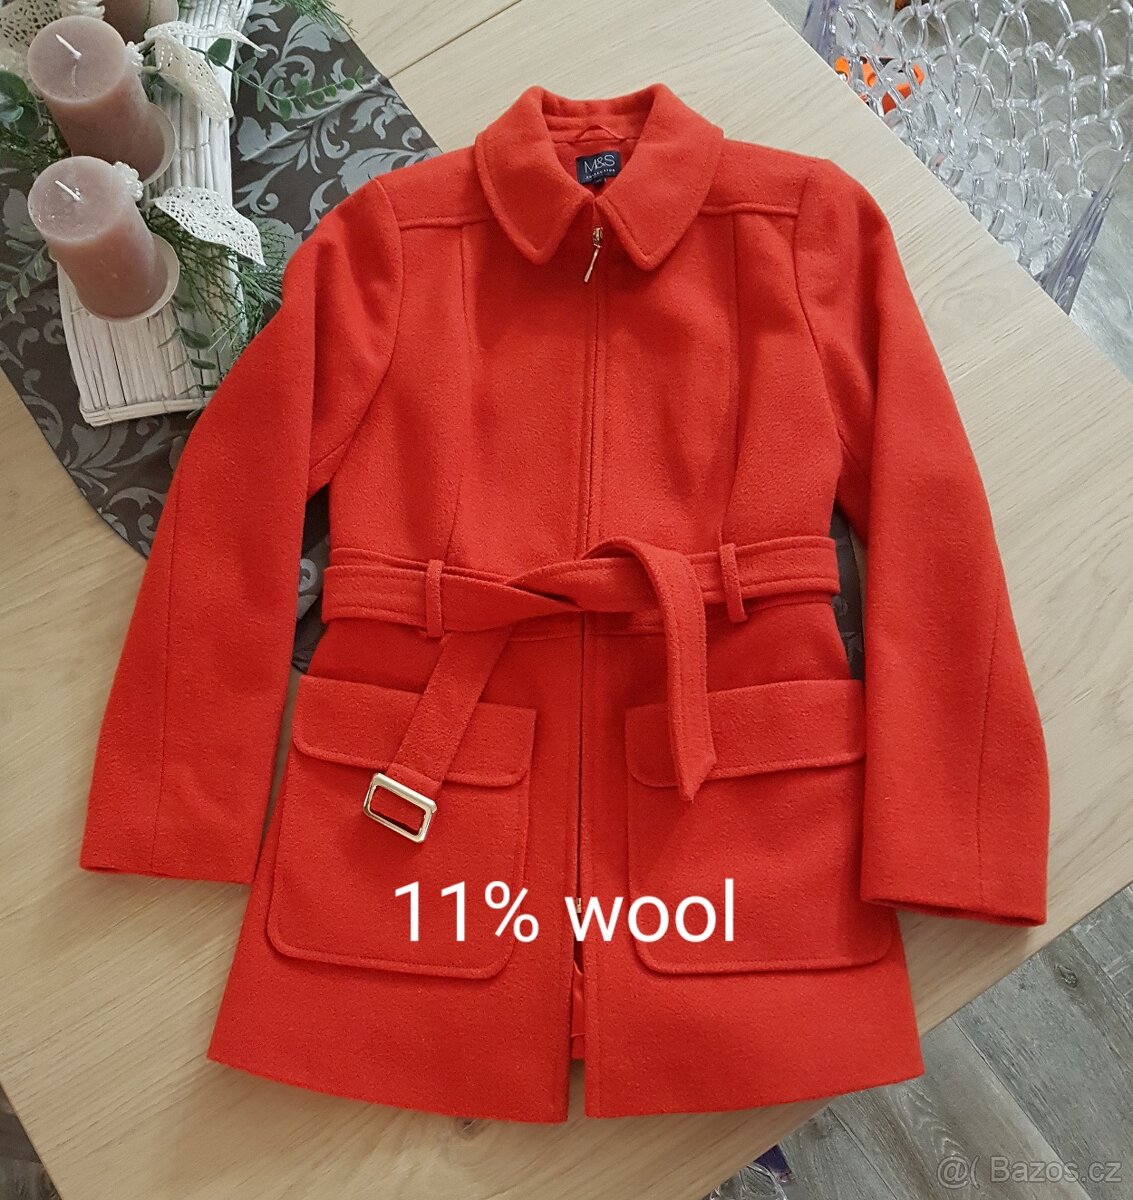 POŠTA  V CENĚ Krásný dámský kabát jasně červený velikost S-M